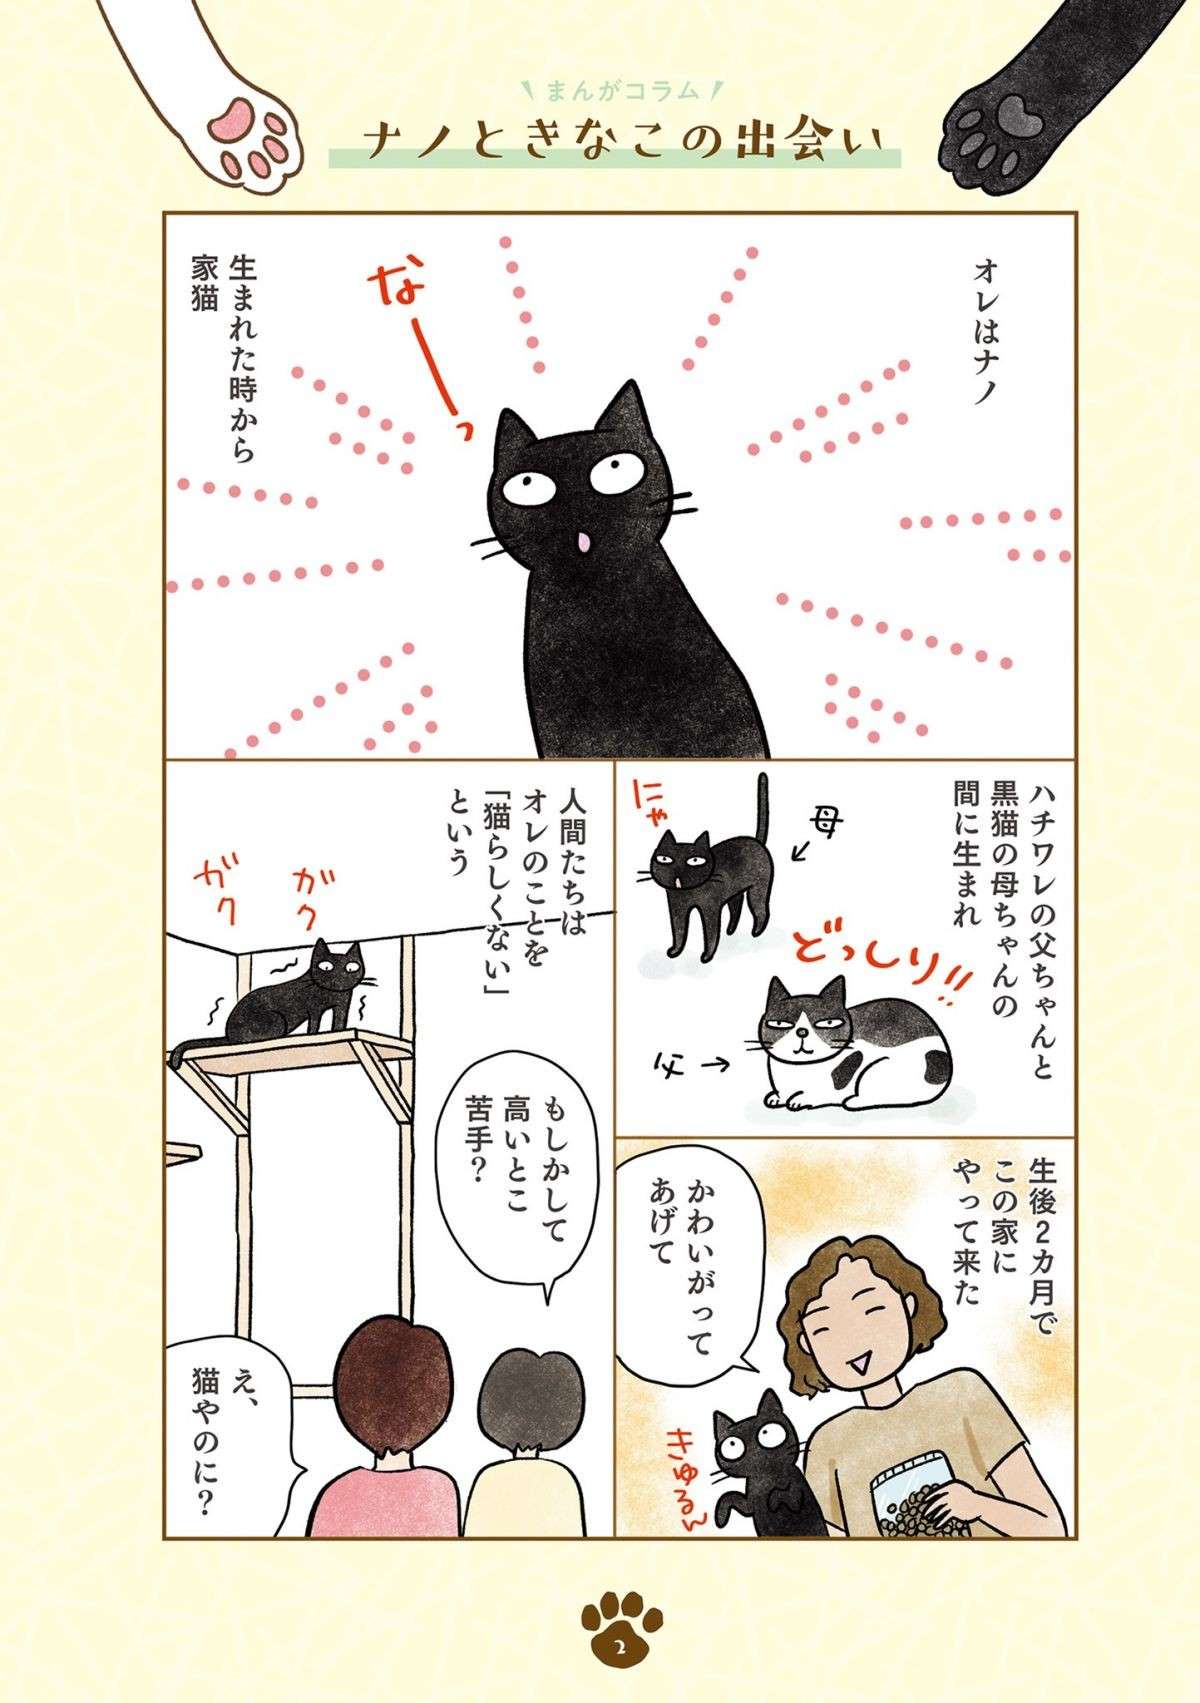 「え、猫やのに？」猫らしくない黒猫。新入りキジシロ猫との関係は？／黒猫ナノとキジシロ猫きなこ kuroneko_nano1-1.jpg